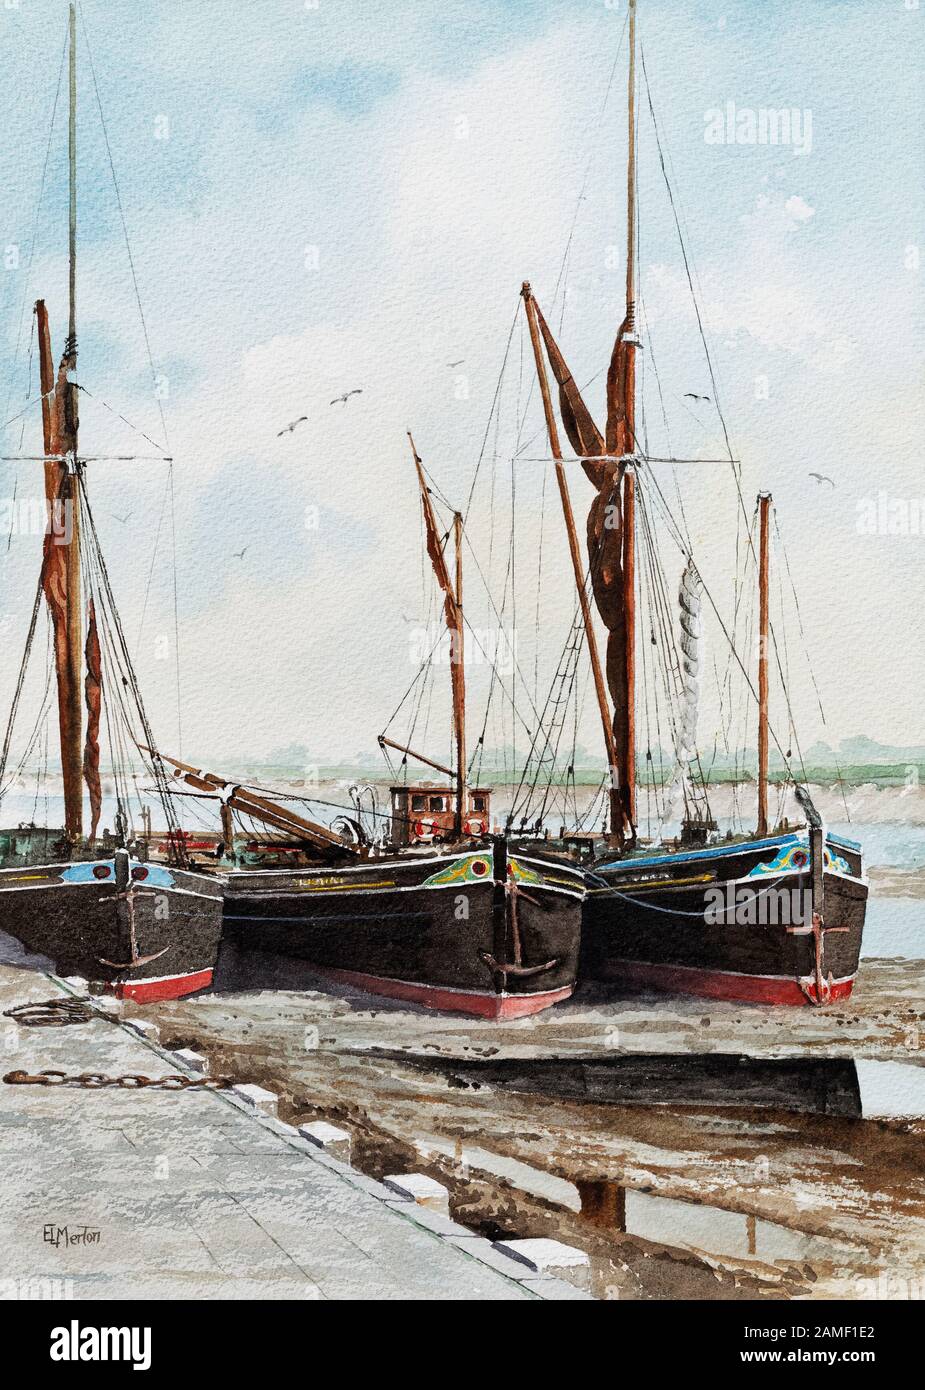 Gemälde von Themsespritsegelkähnen moored up. Stockfoto